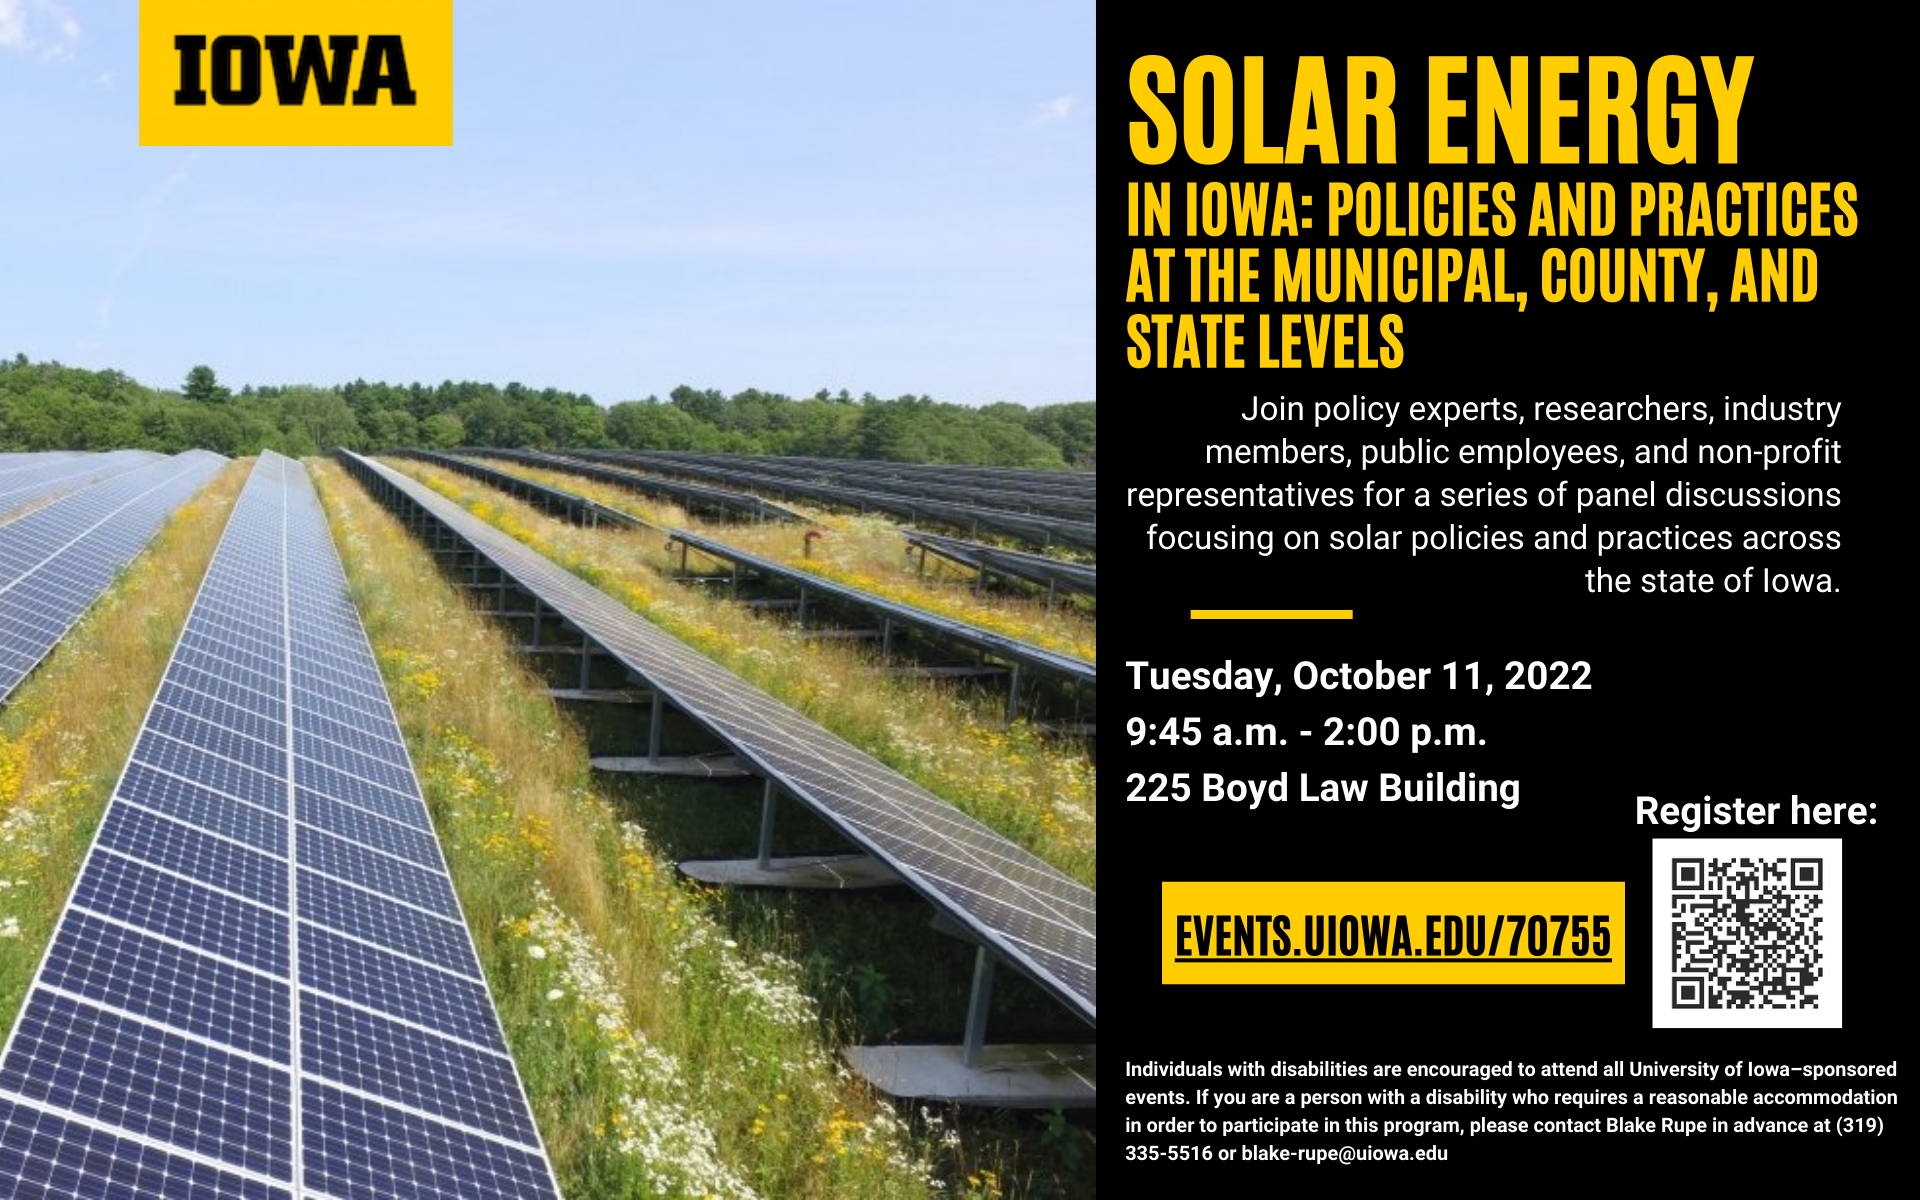 Solar Talk at Boyd Law Building on October 11 starting 9:45